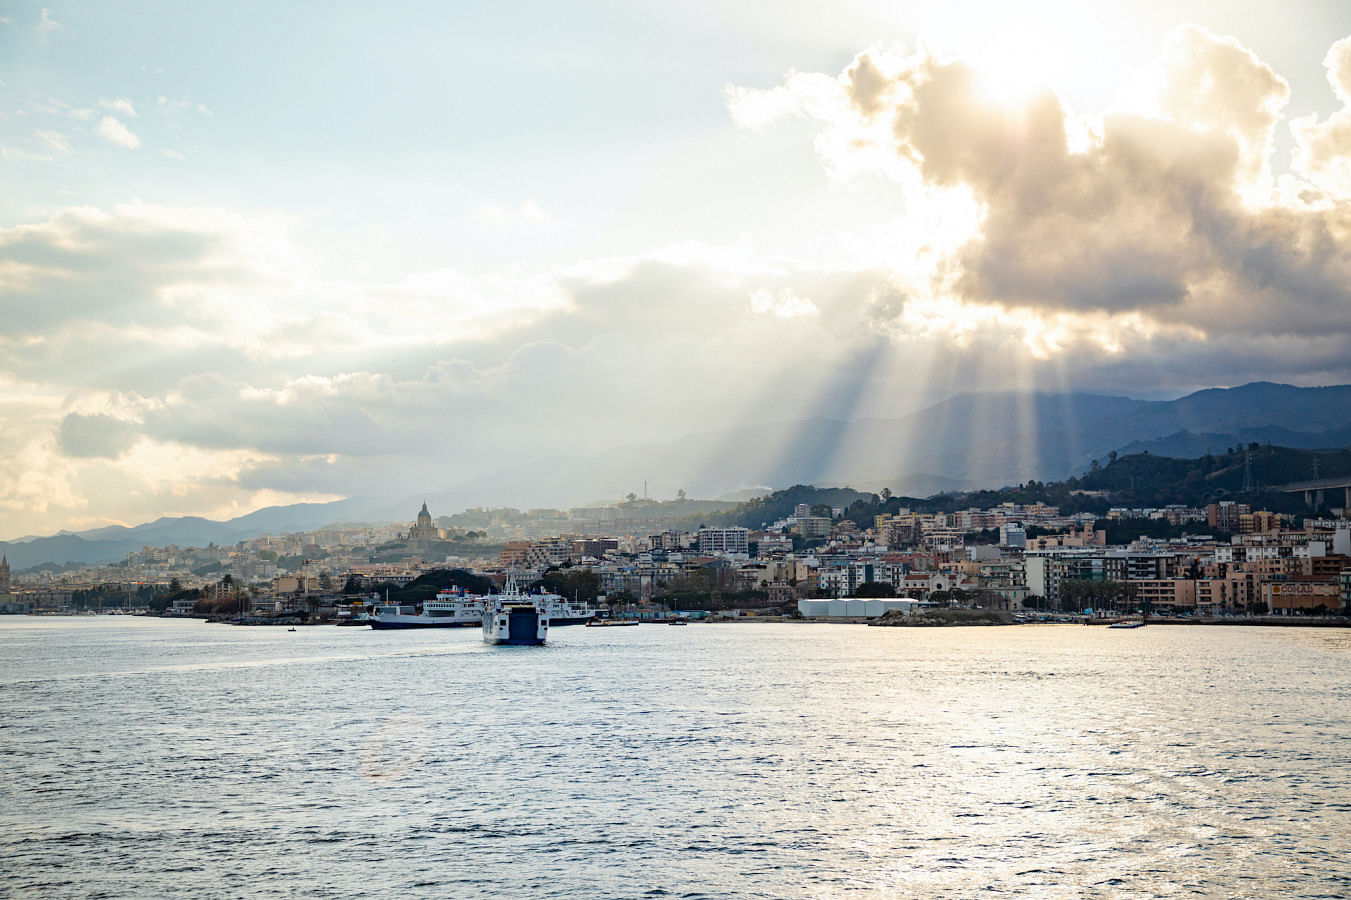 Hyr en båt i Messina